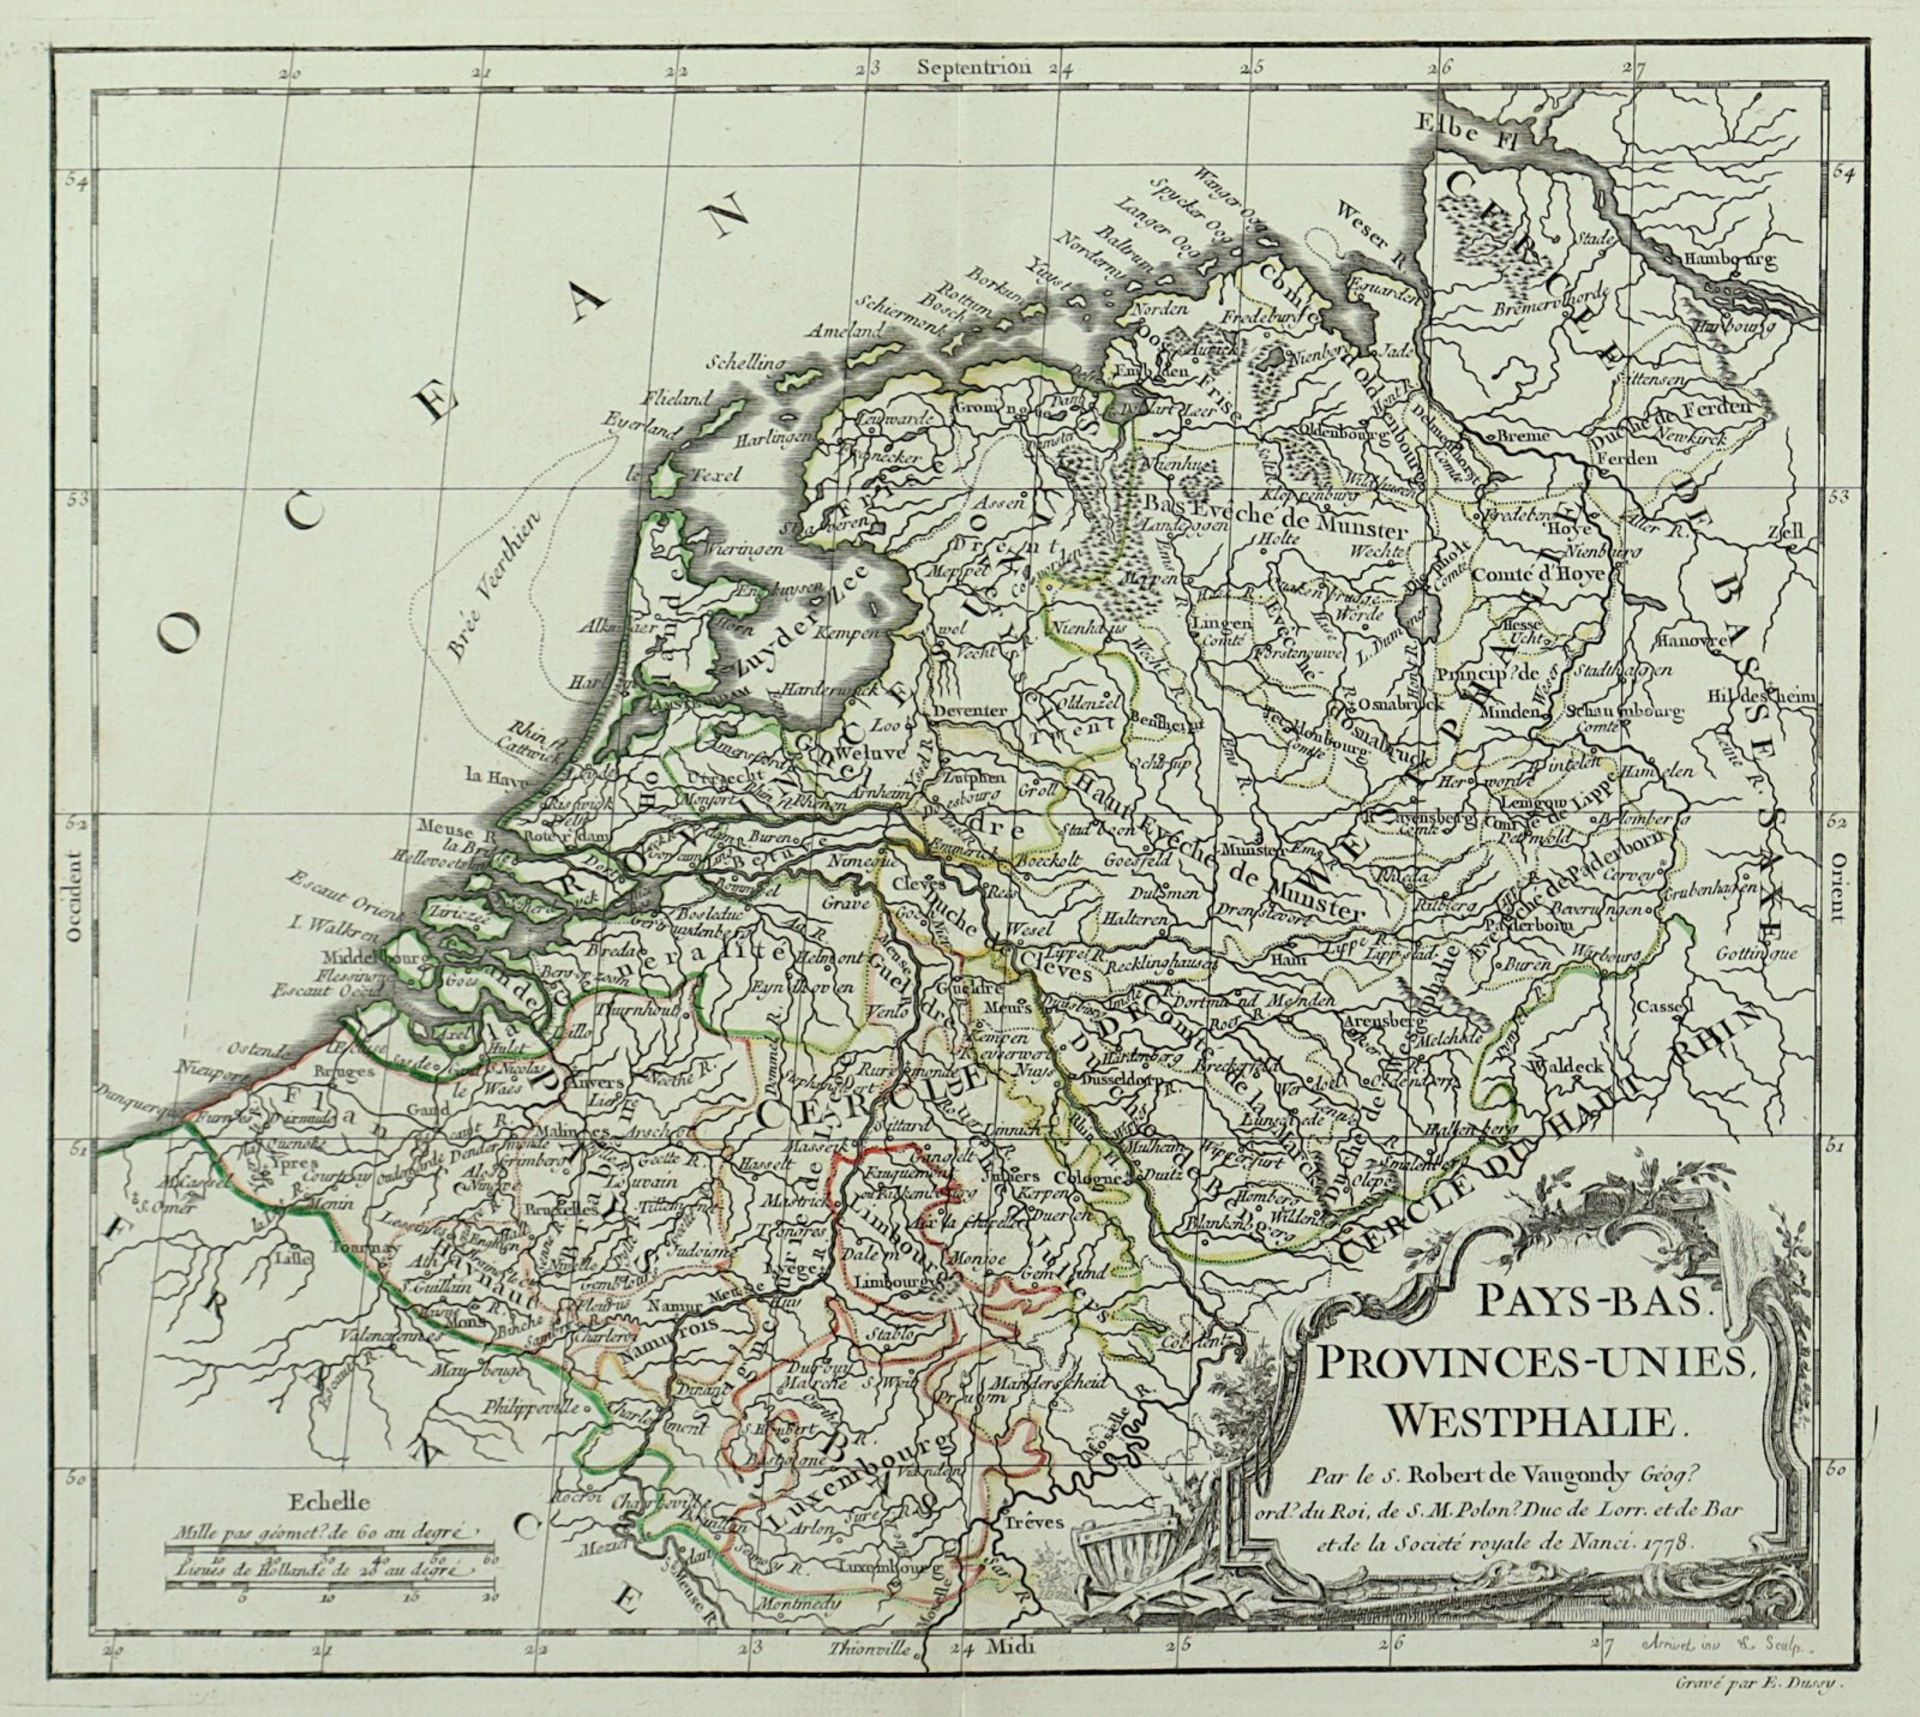 Pays-Bas Provinces-Unies Westphalie, Kupferstich koloriert, E. Dussy, 1778, R. - Bild 2 aus 2